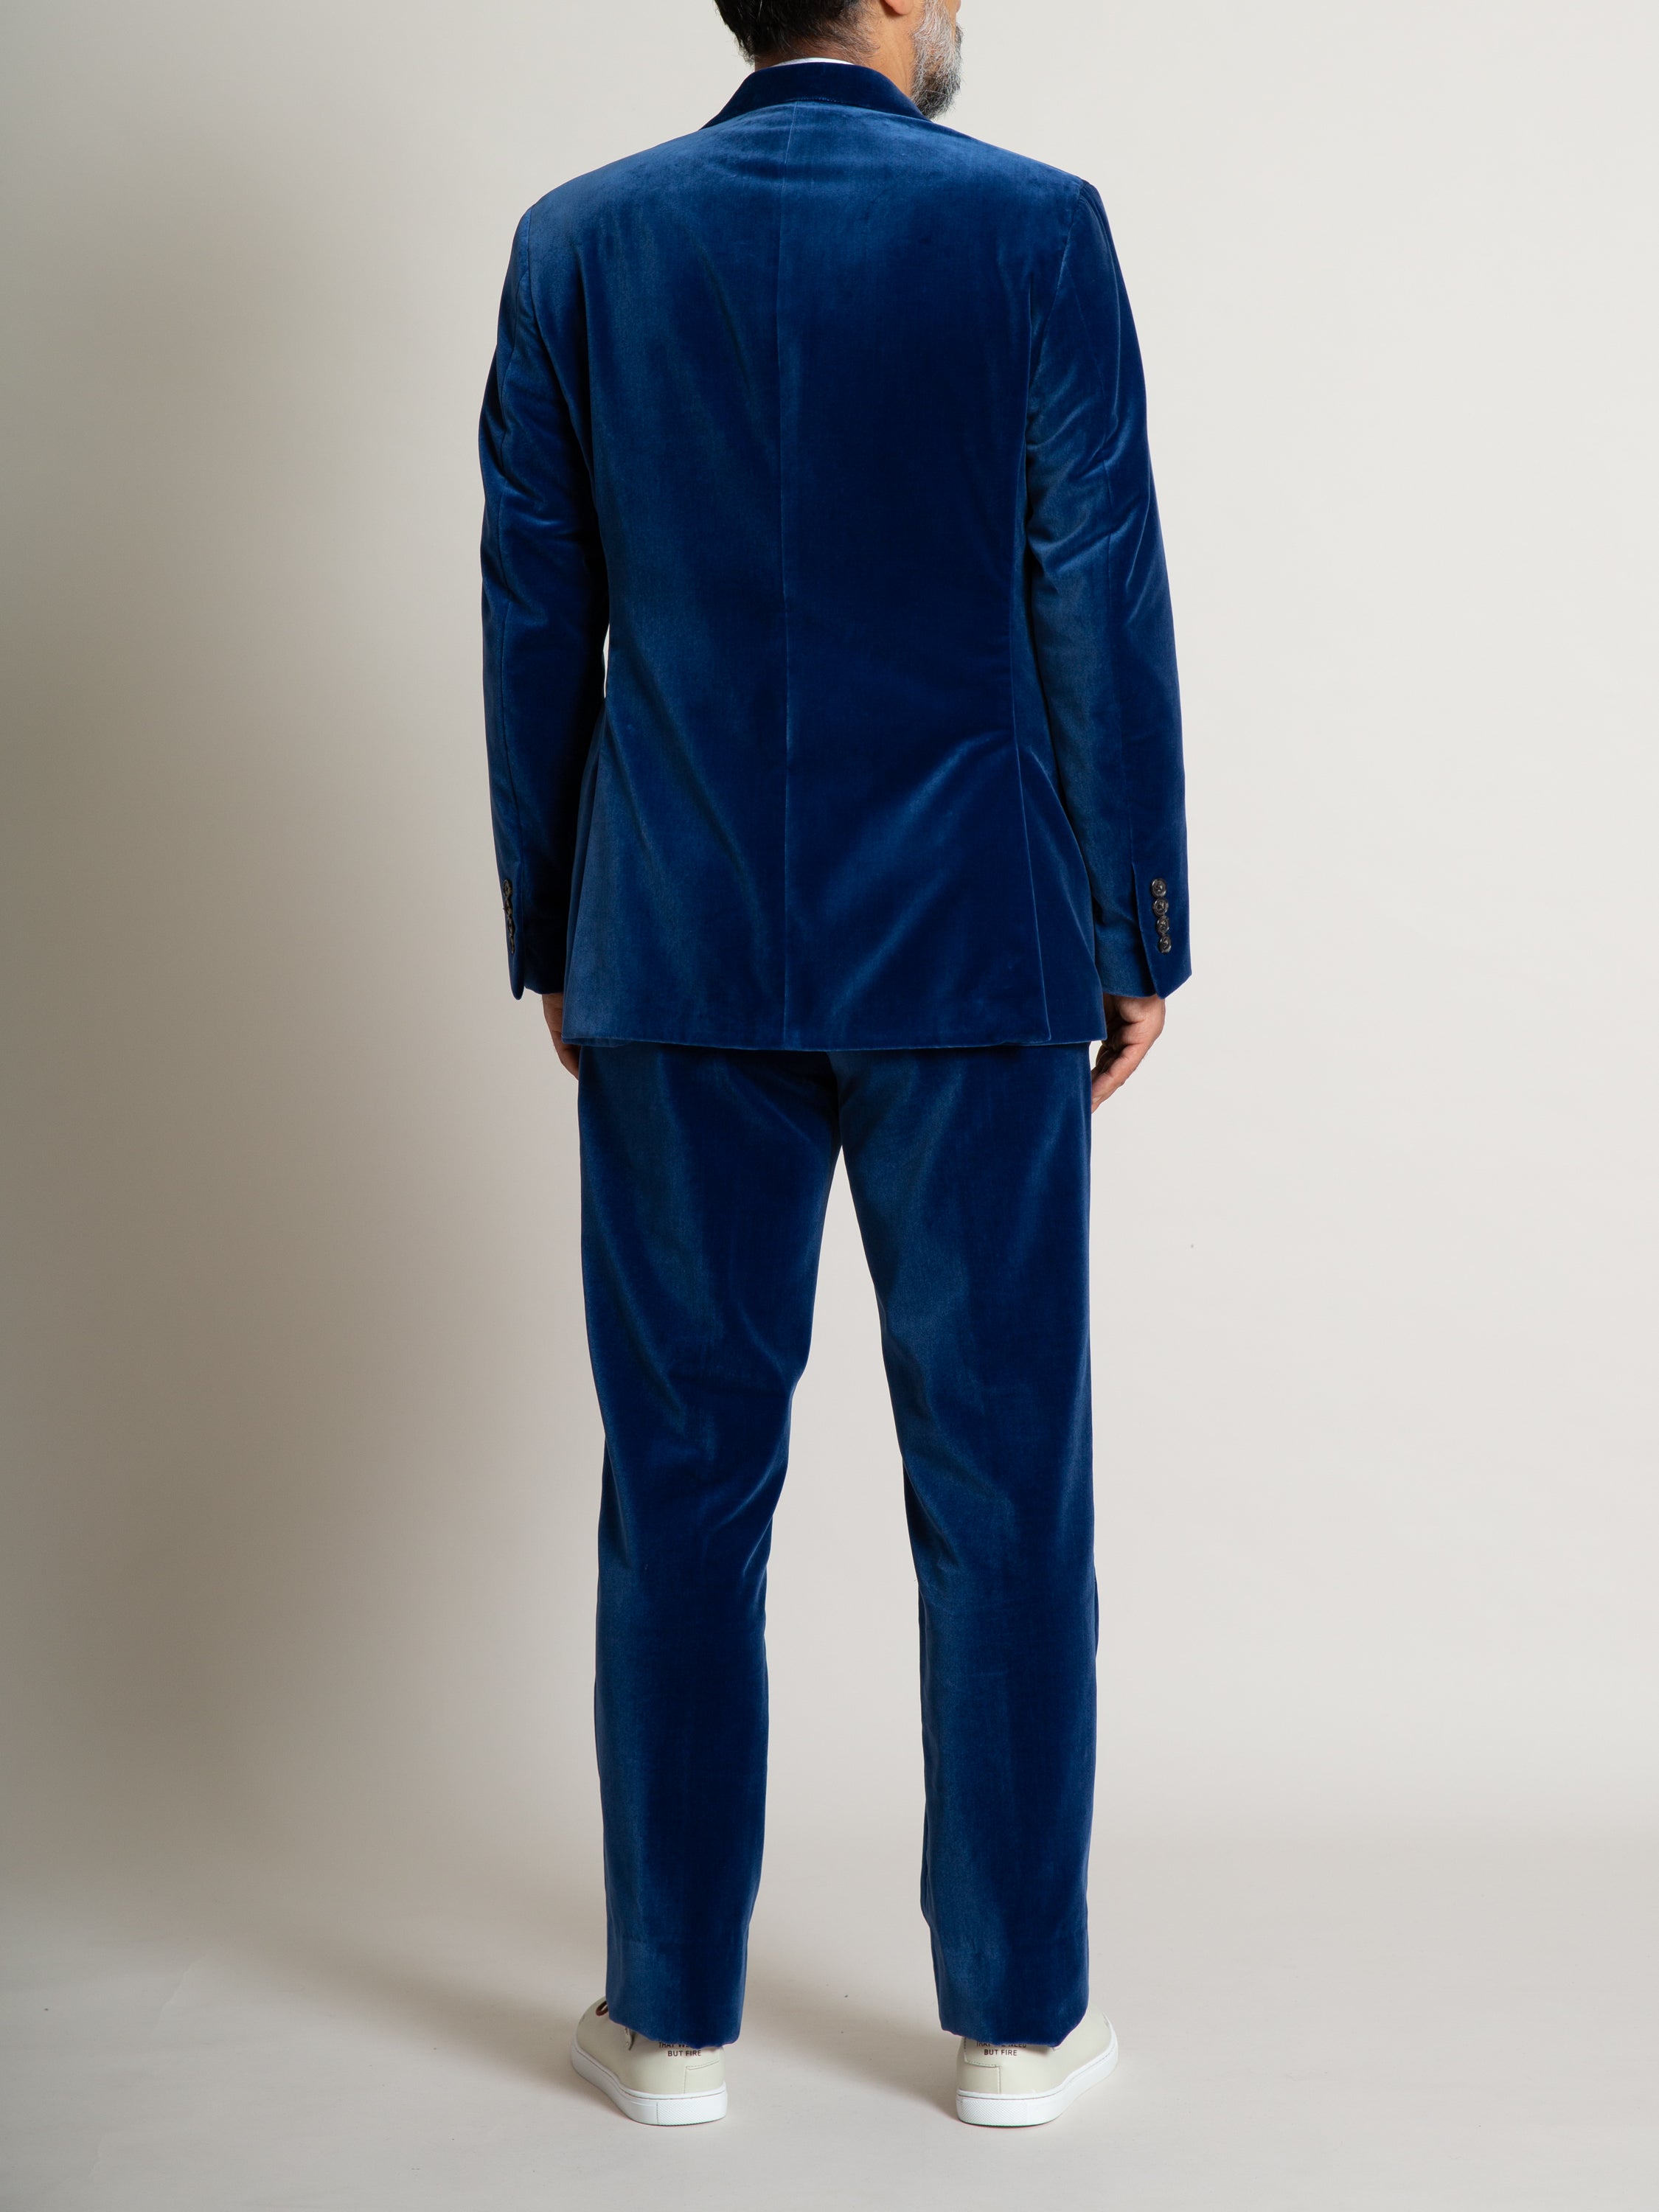 The Freeman Suit - Blue Velvet